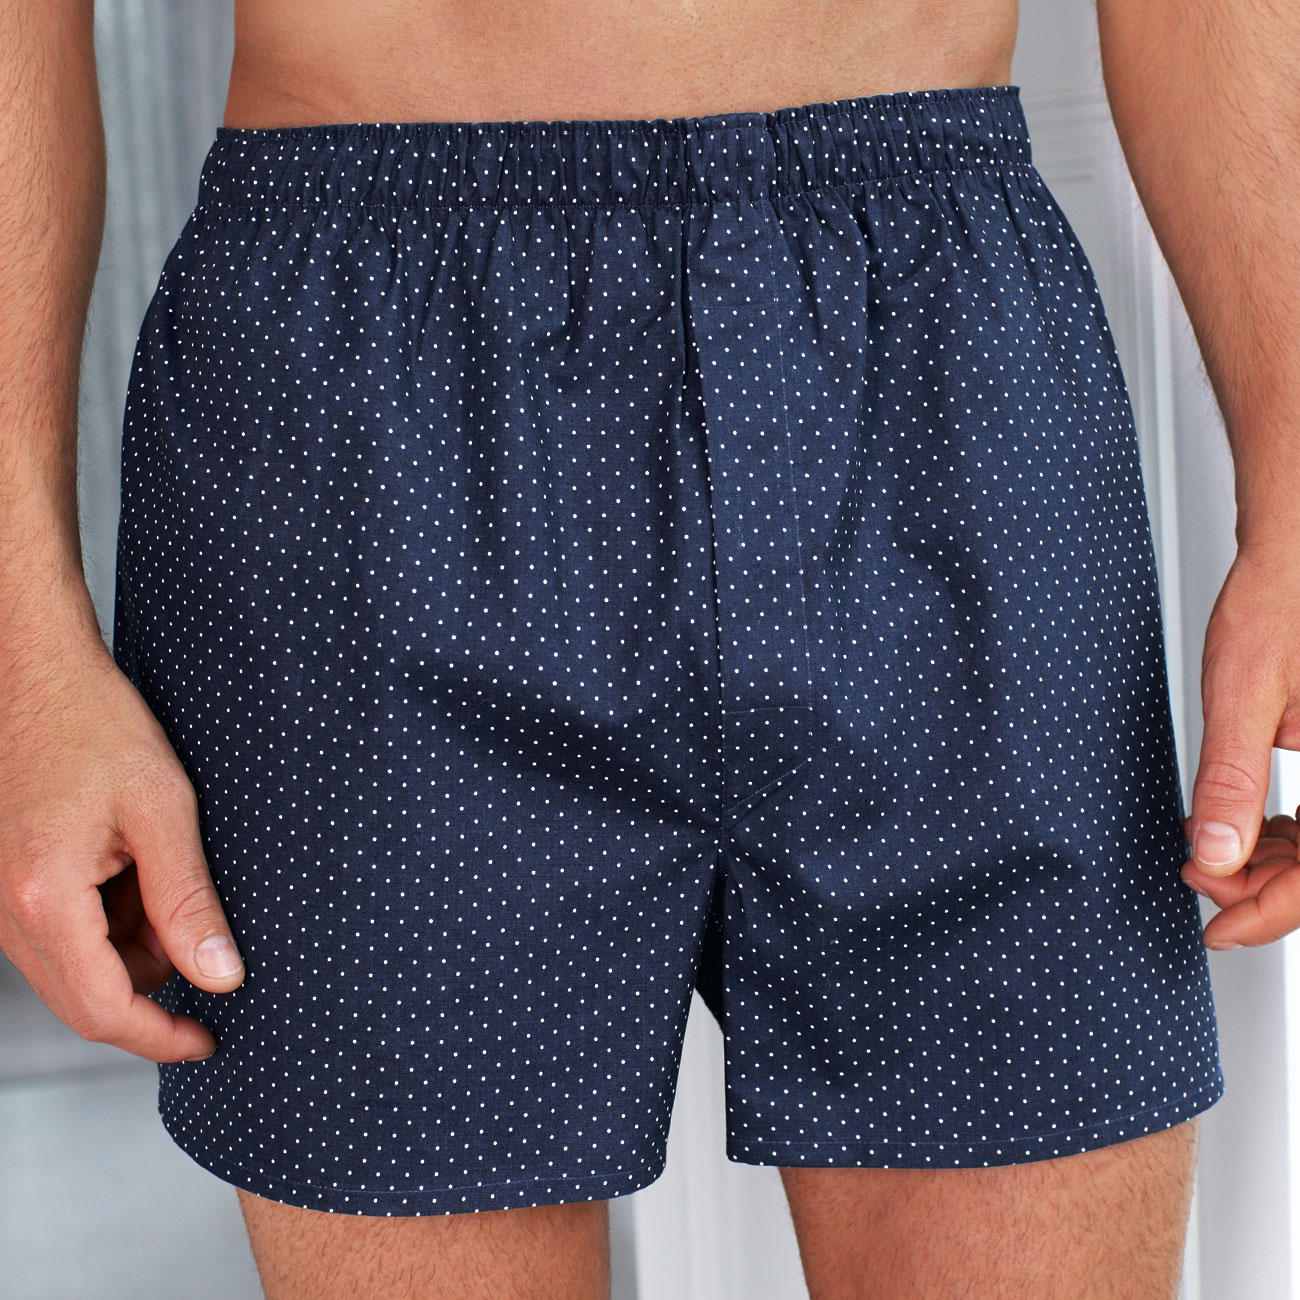 Buy Sunspel Speckled Boxer Shorts online